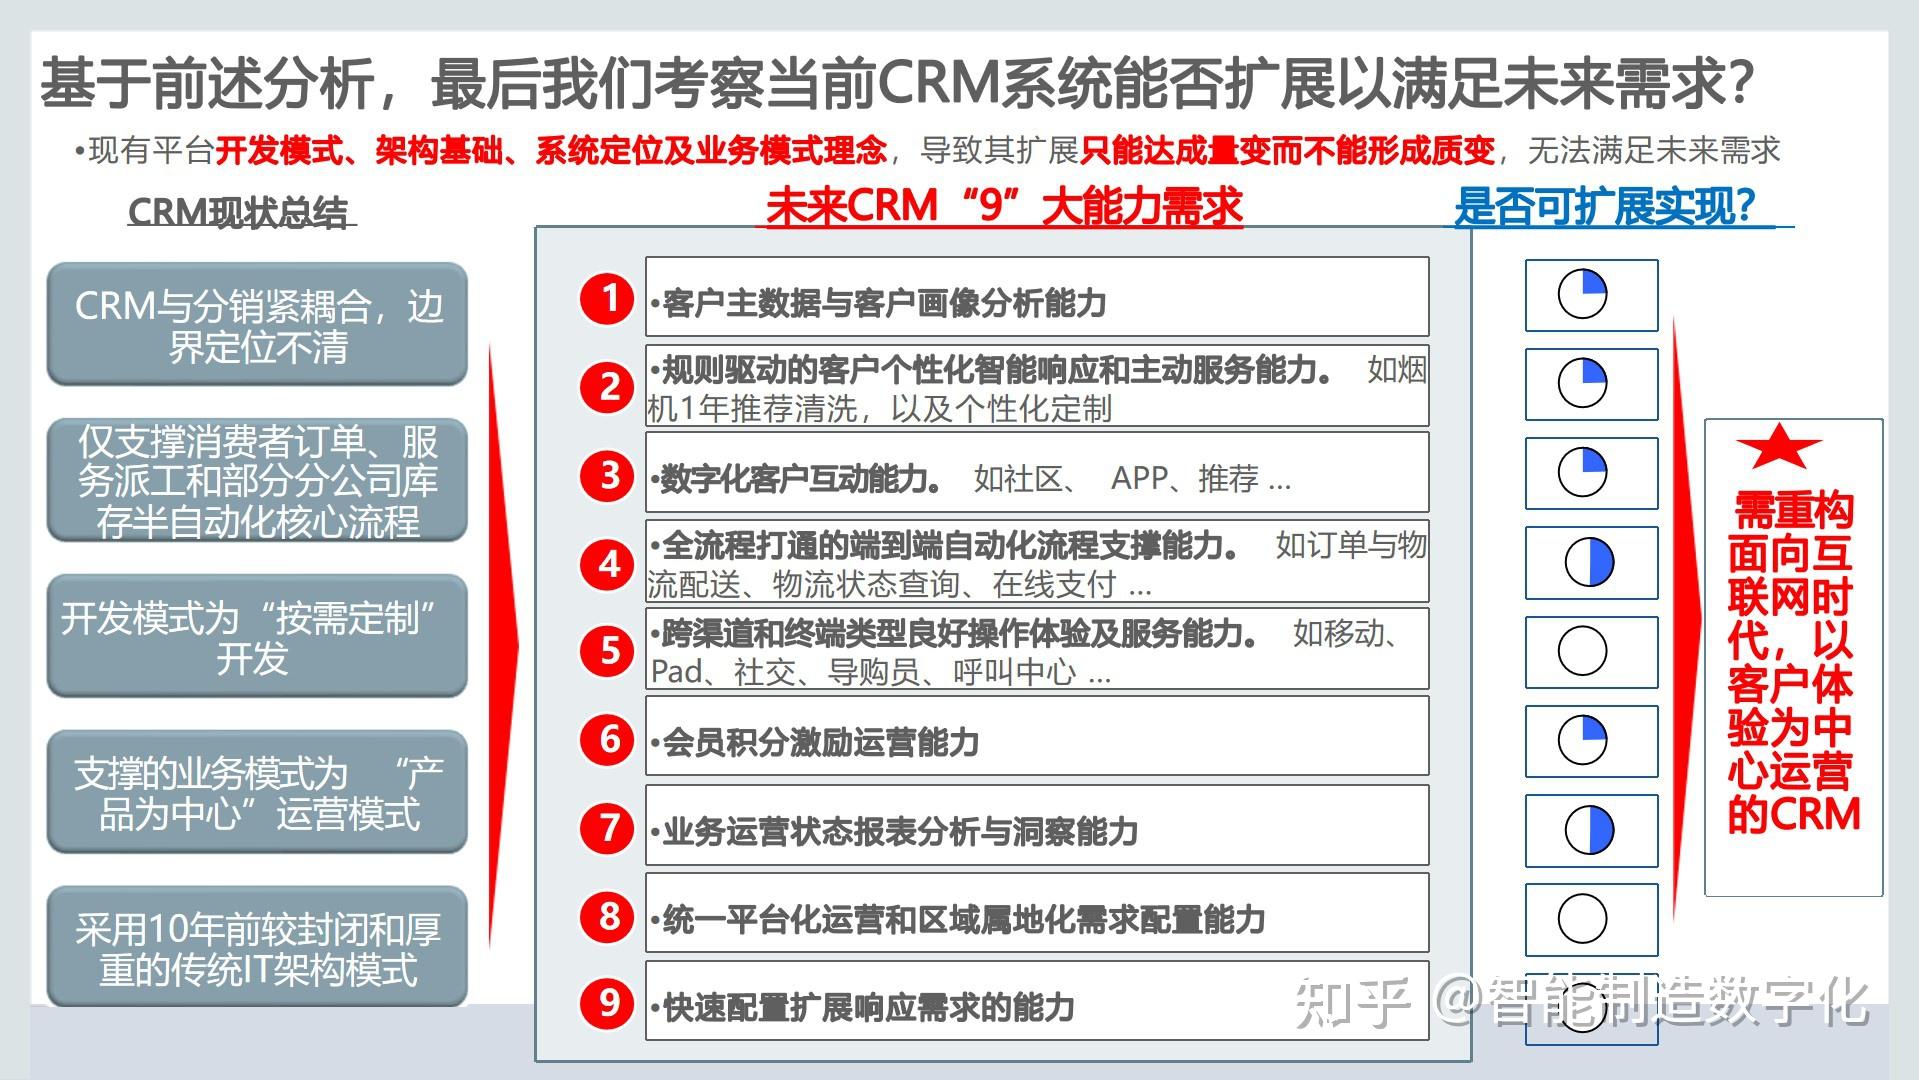 一,crm客户关系管理系统